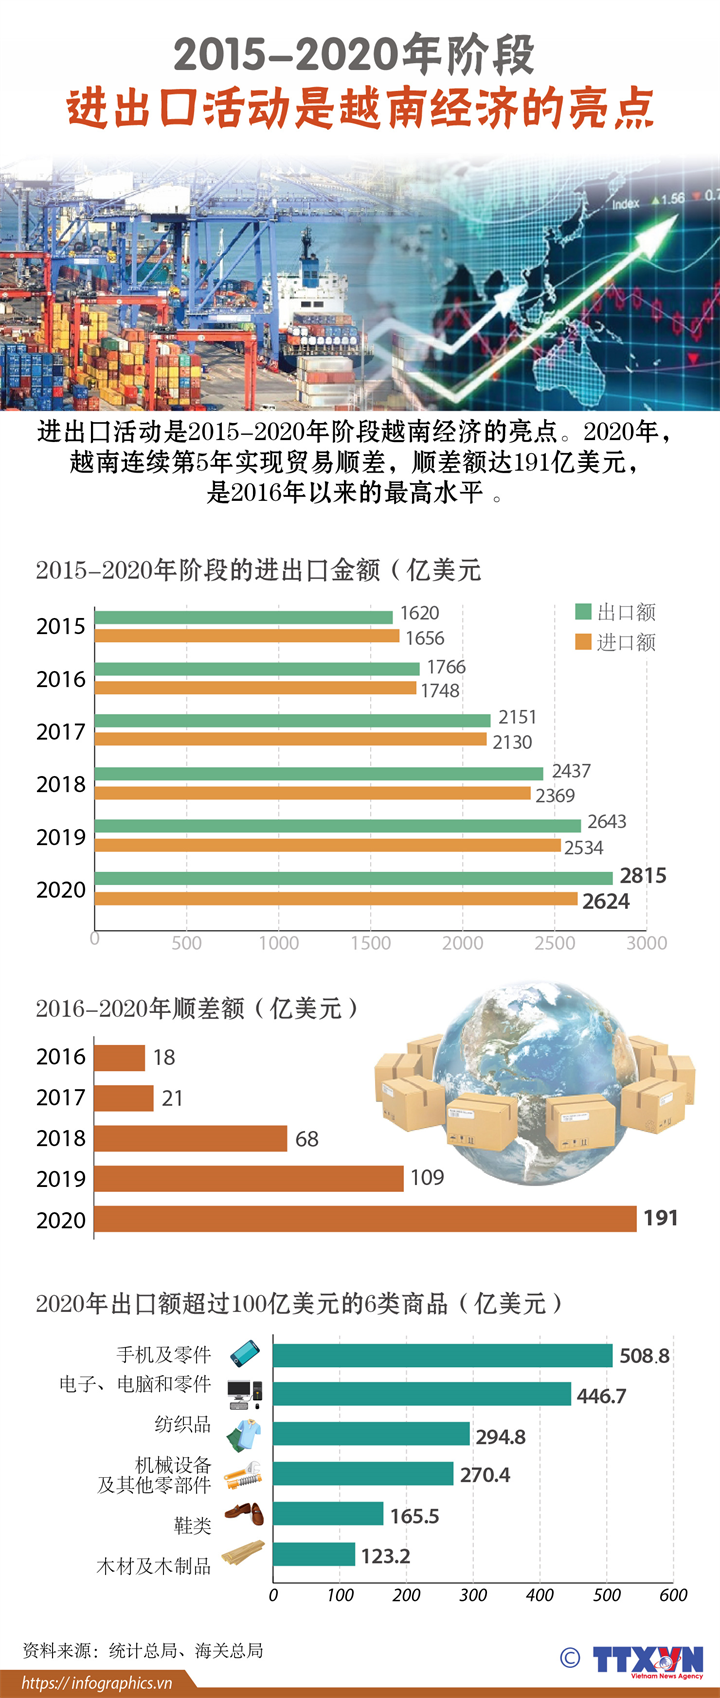 2015-2020年阶段进出口活动是越南经济的亮点